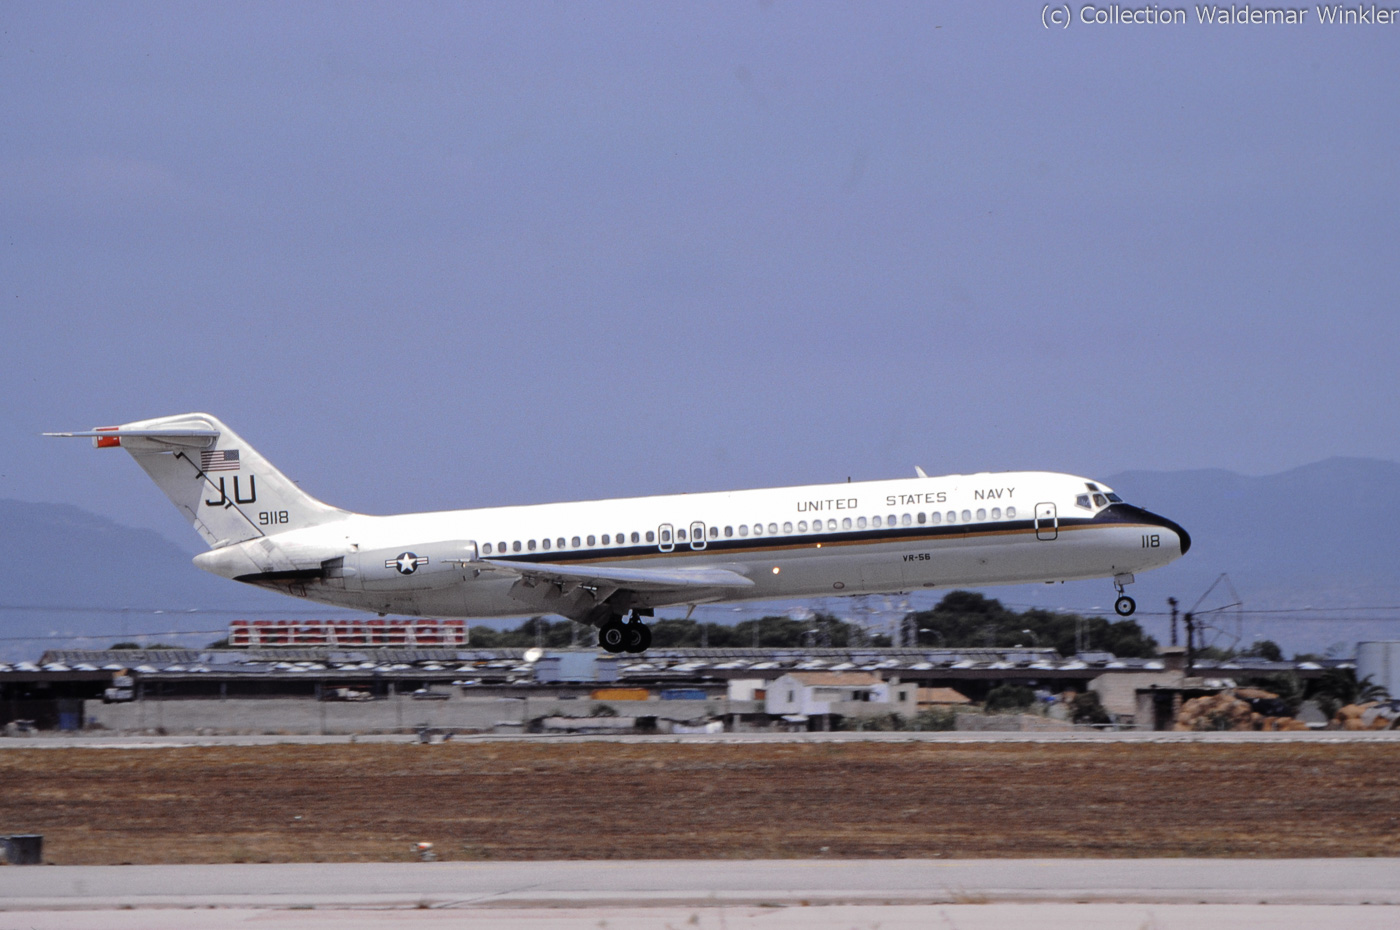 DC-9_DSC_2950.jpg